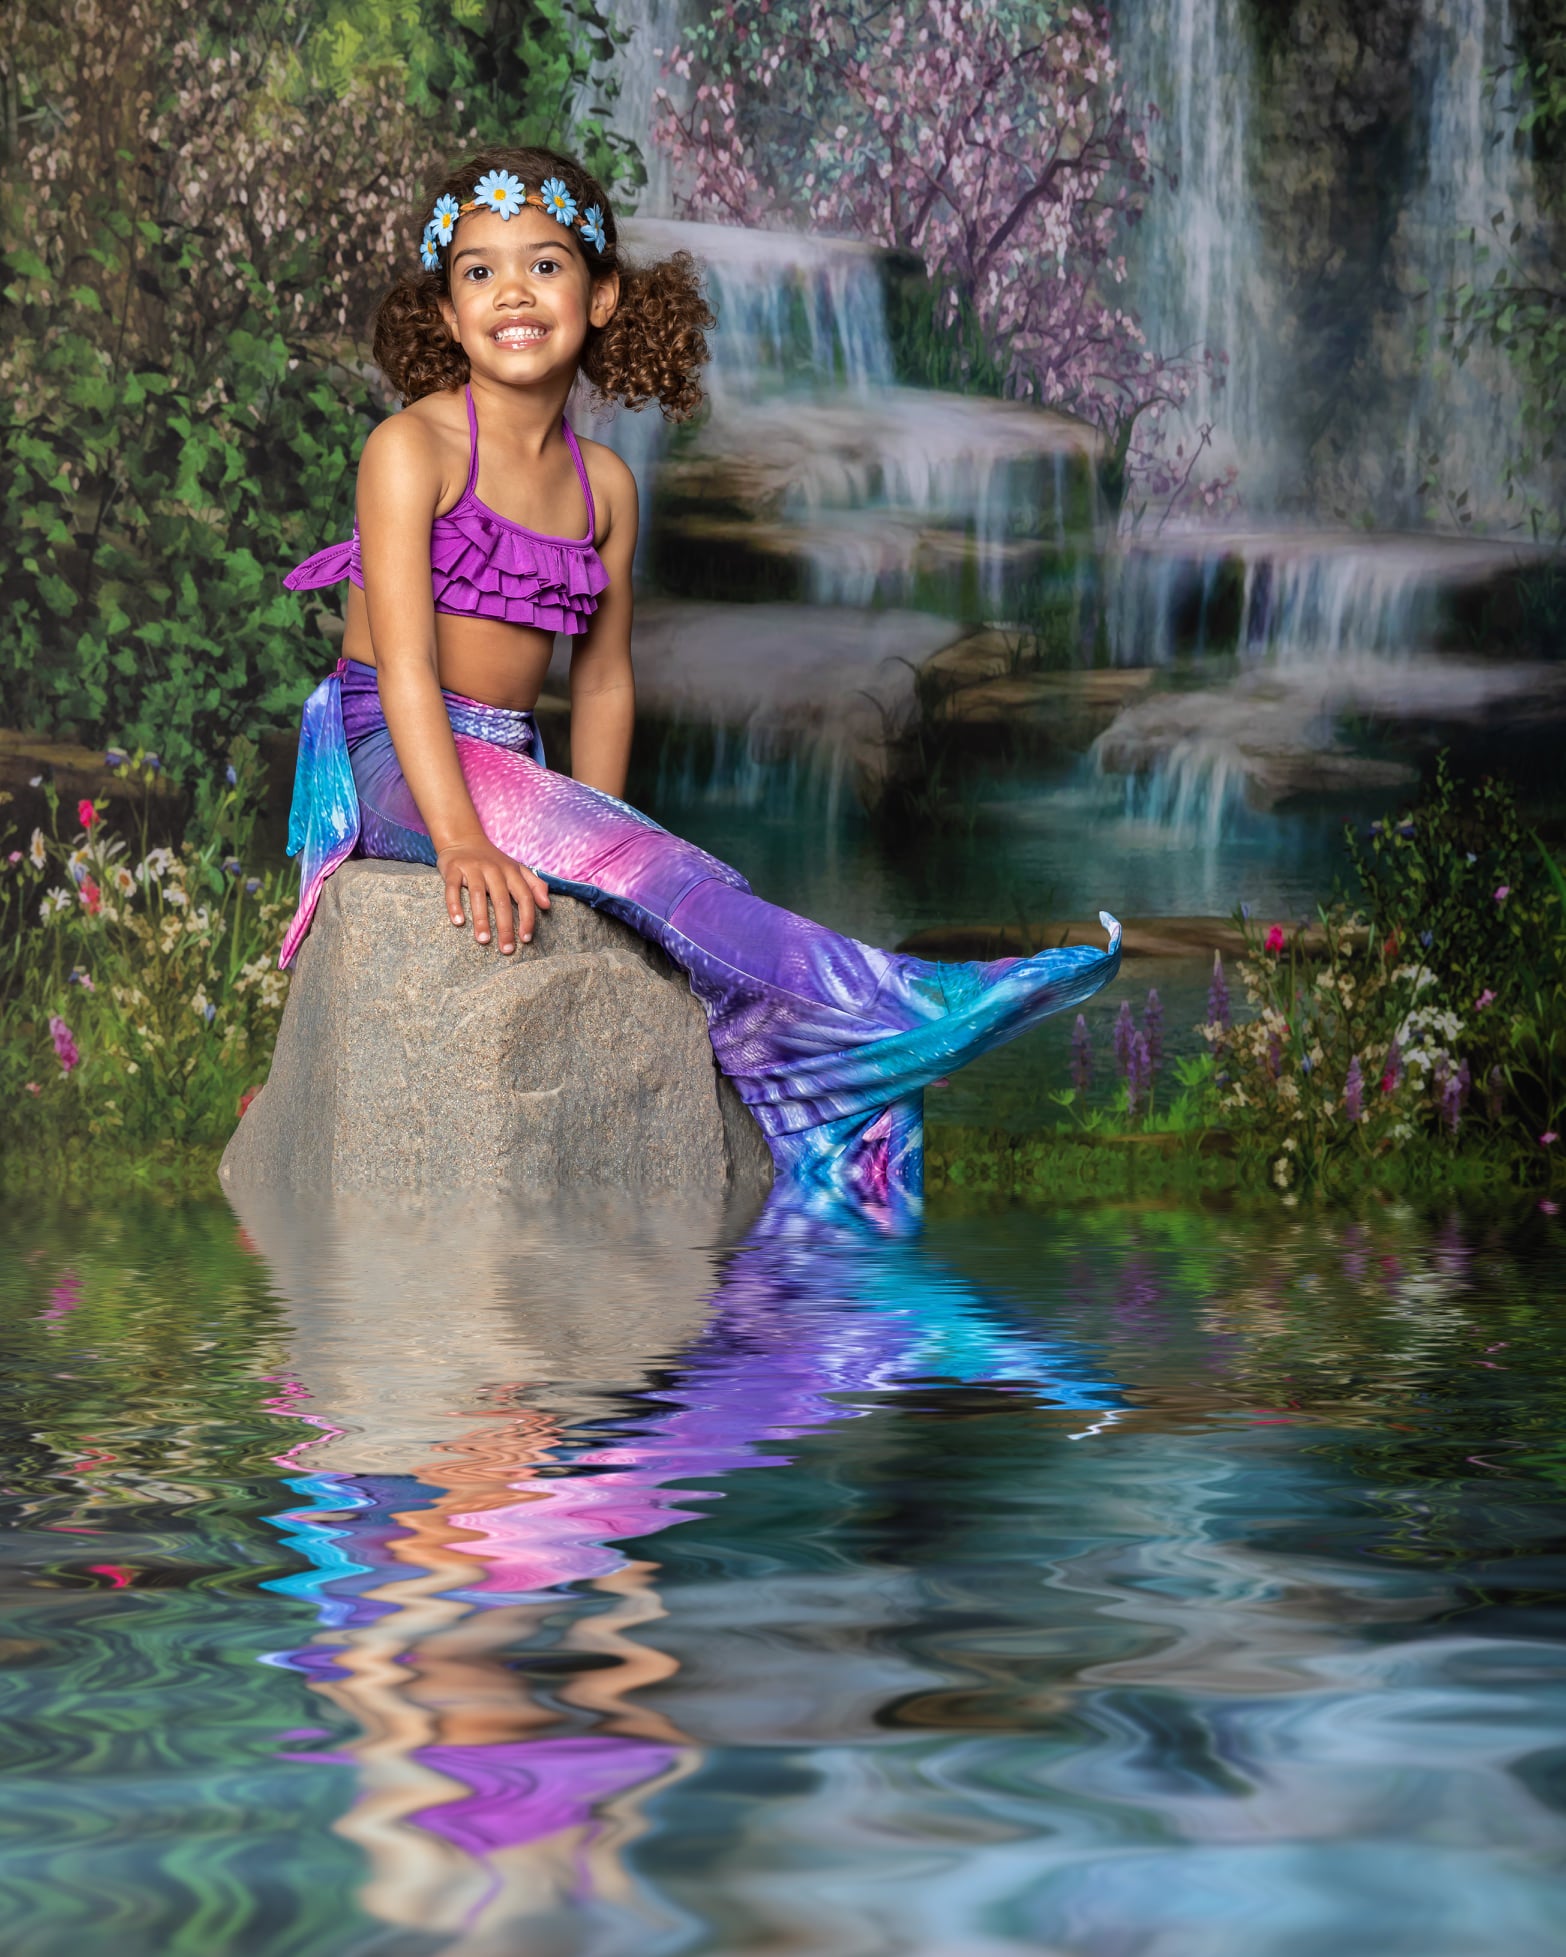 Kate Mermaid Stream Water Spring Backdrop